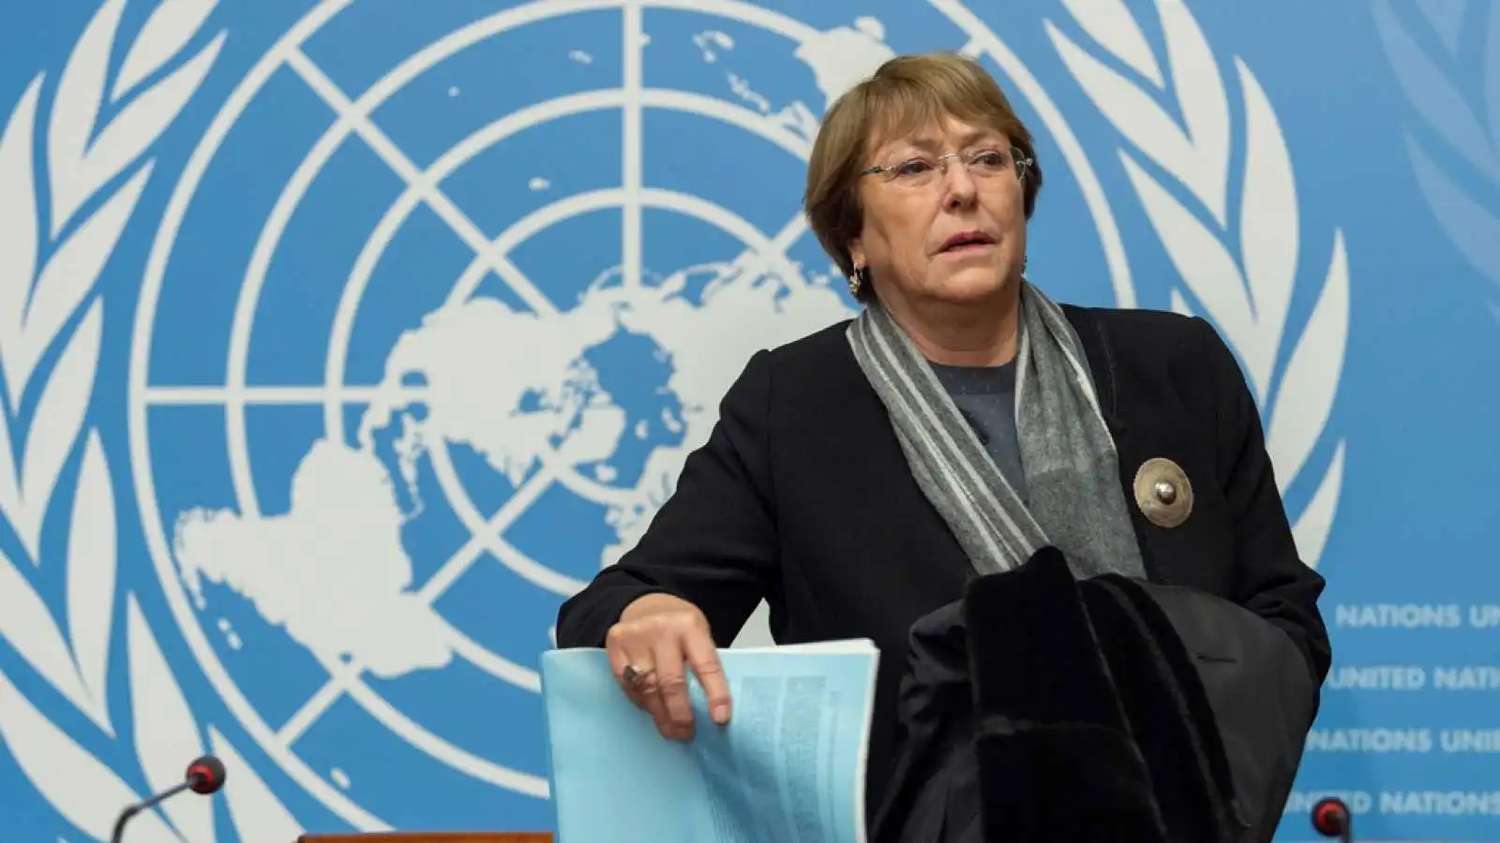 Los adultos mayores padecen "la falta de protección de los derechos", dijo Bachelet 